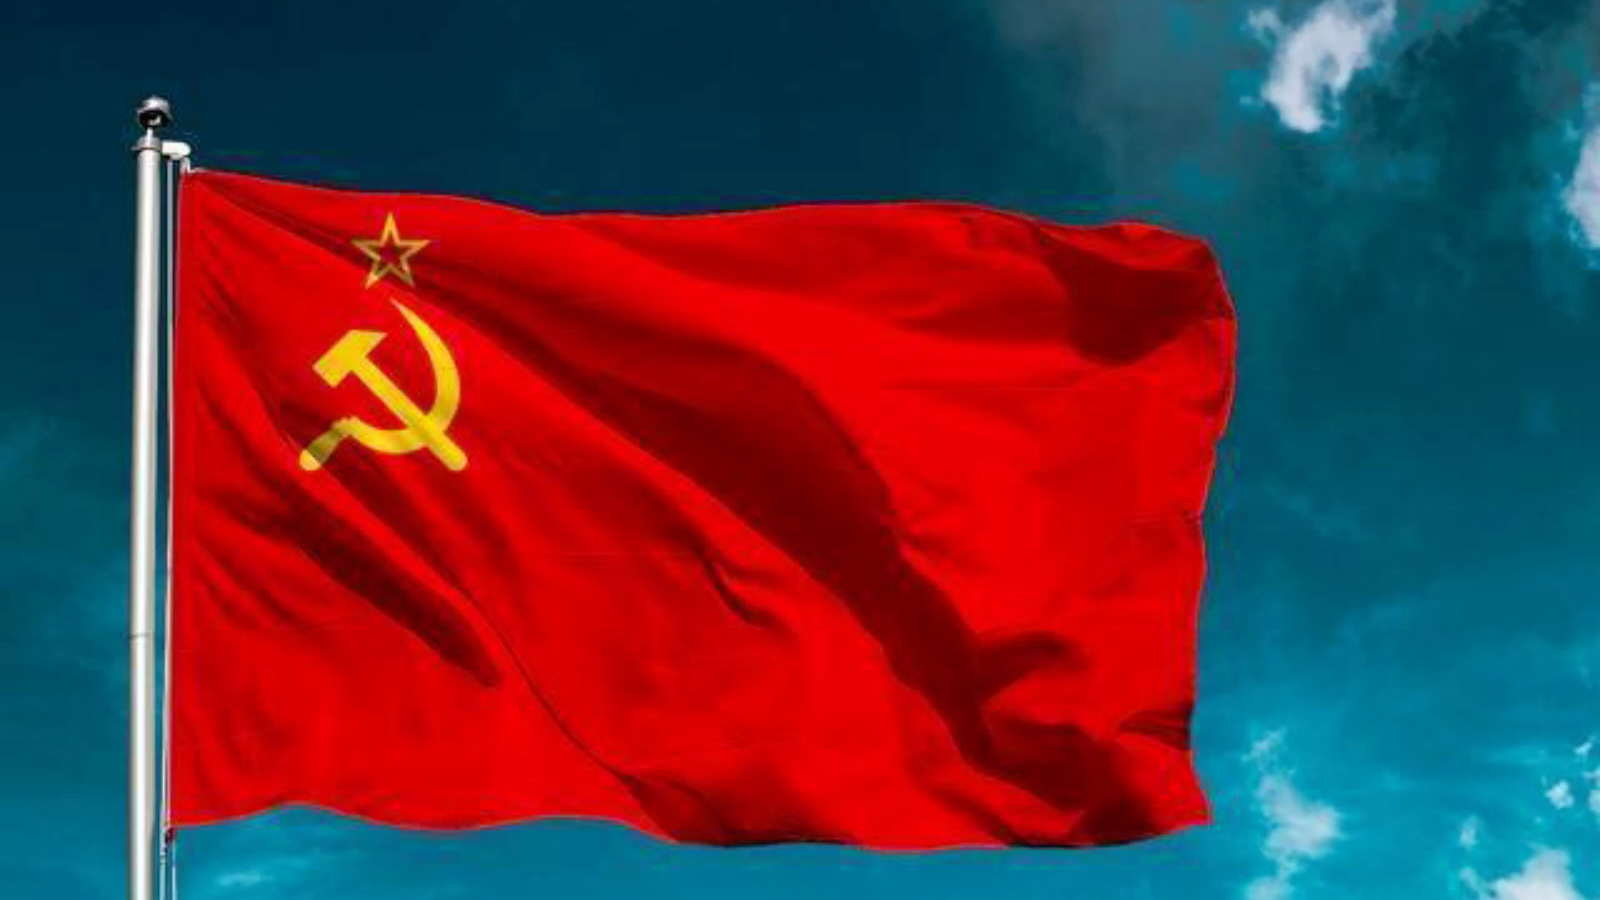 苏维埃红色巨熊图片